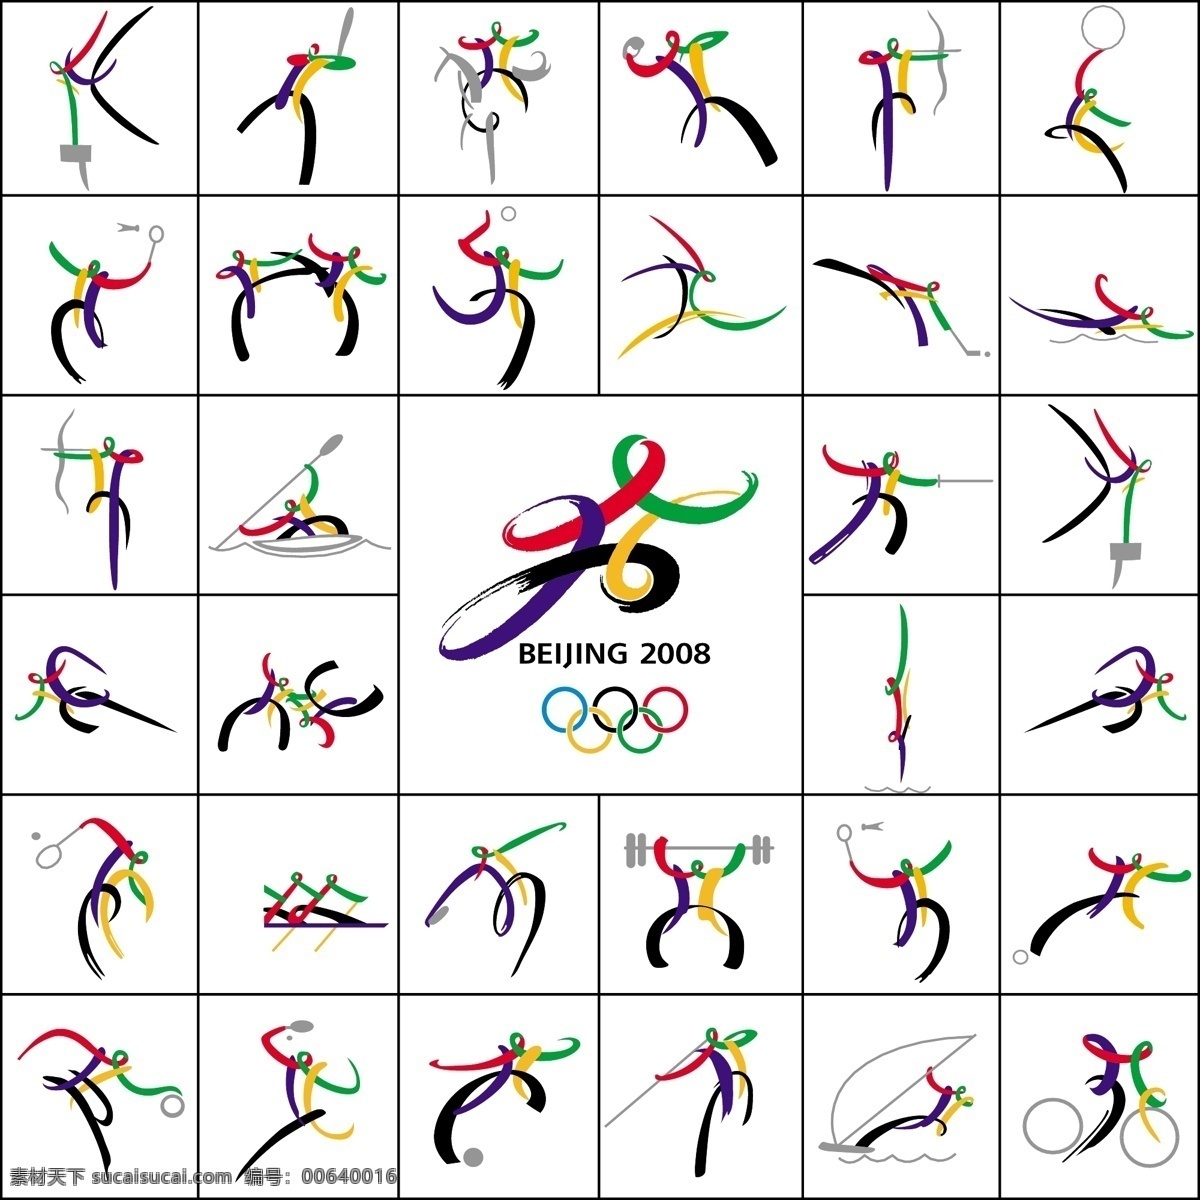 奥运 矢量图 矢量图标 图标 小人 运动 奥运小人 矢量 其他矢量图